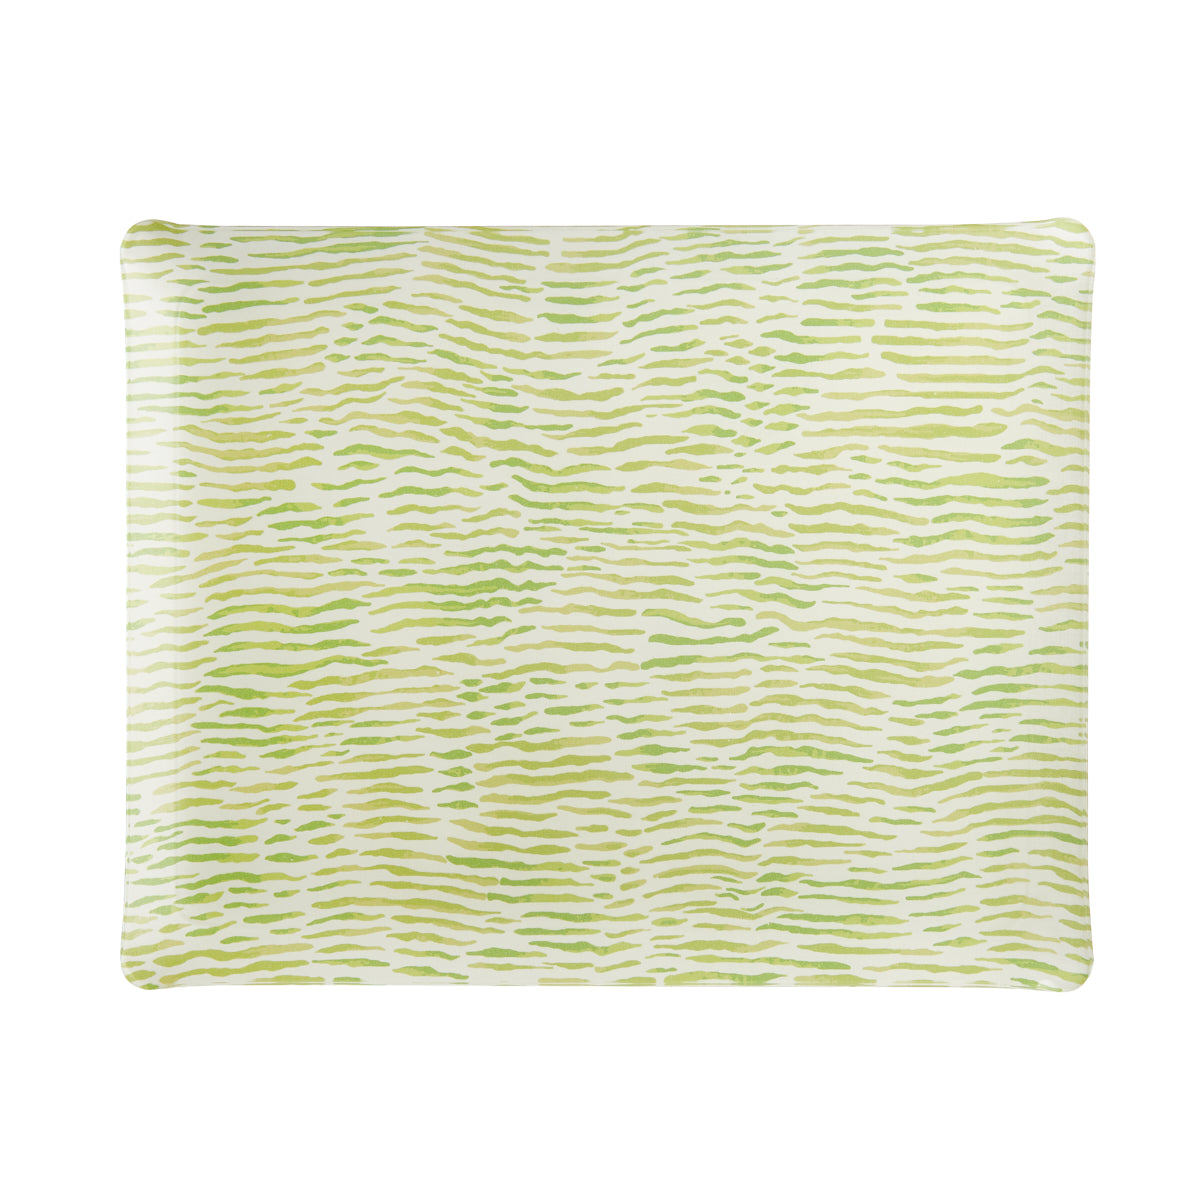 Nina Campbell Fabric Tray Large - Arles Green